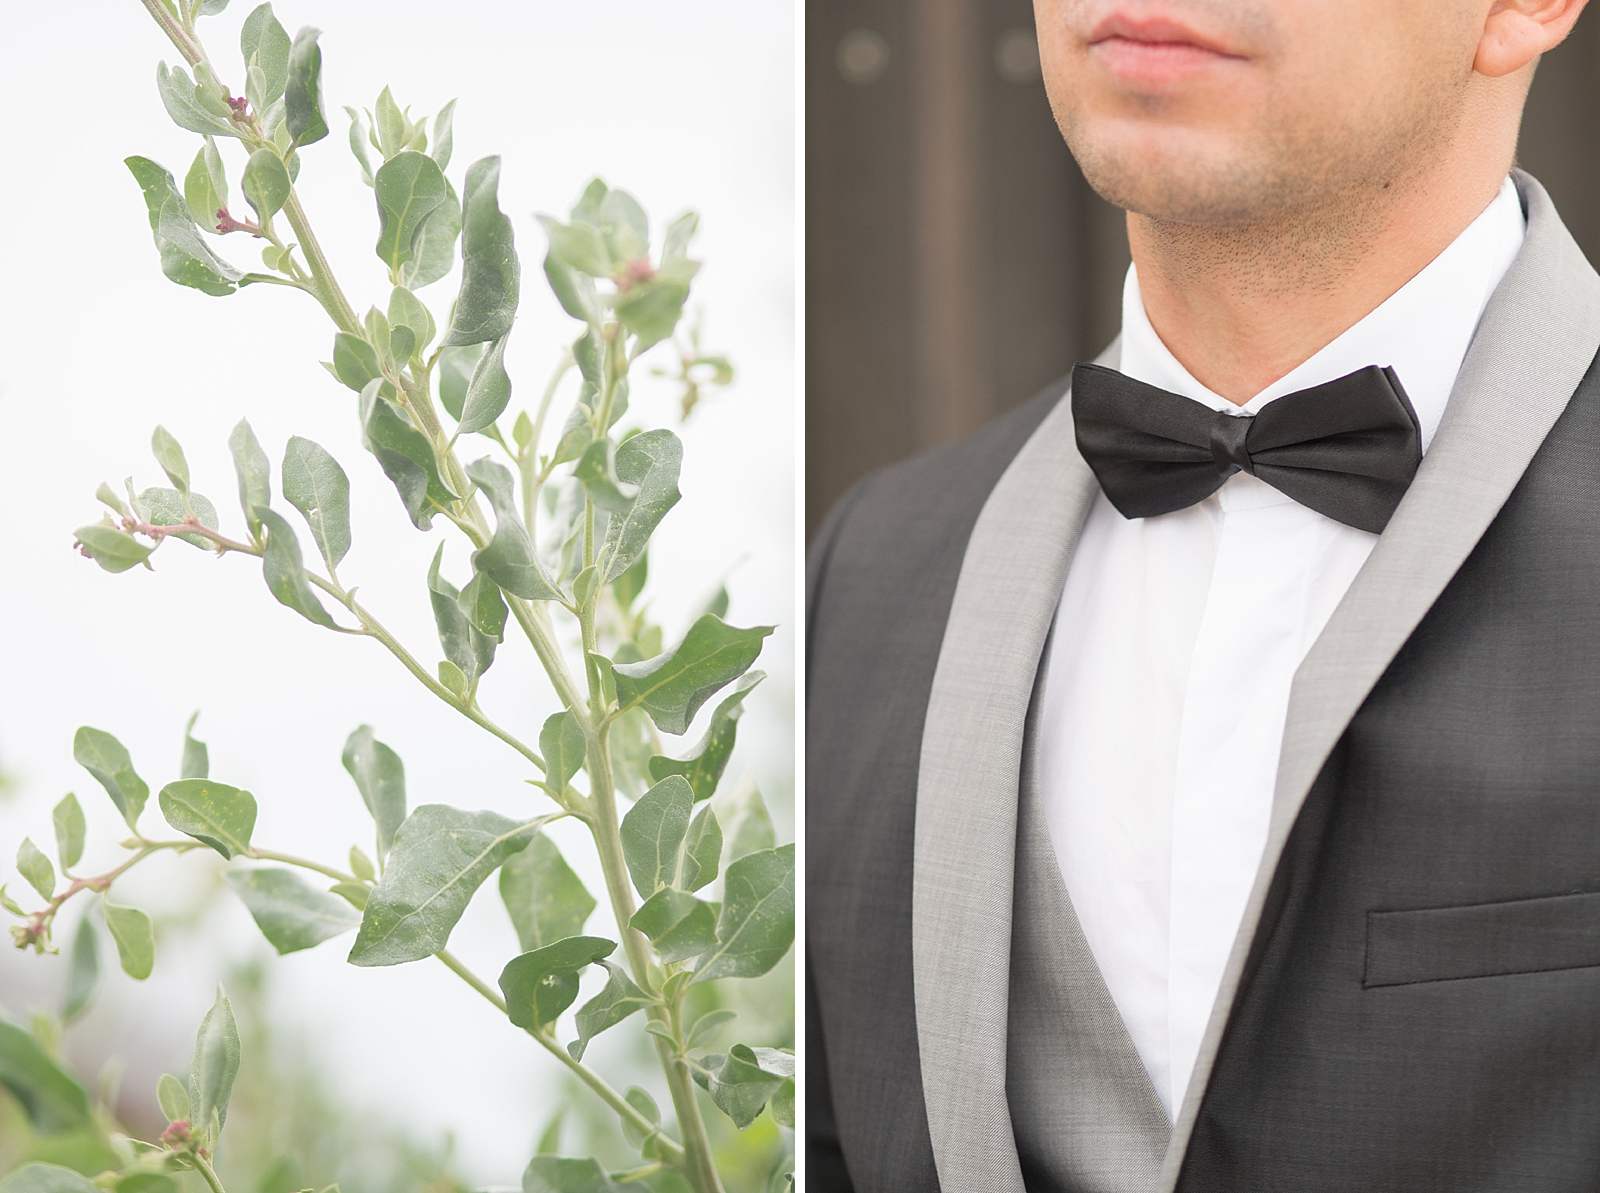 détails sur le costume de mariage du marié. costume gris foncé et noeud de papillon noir